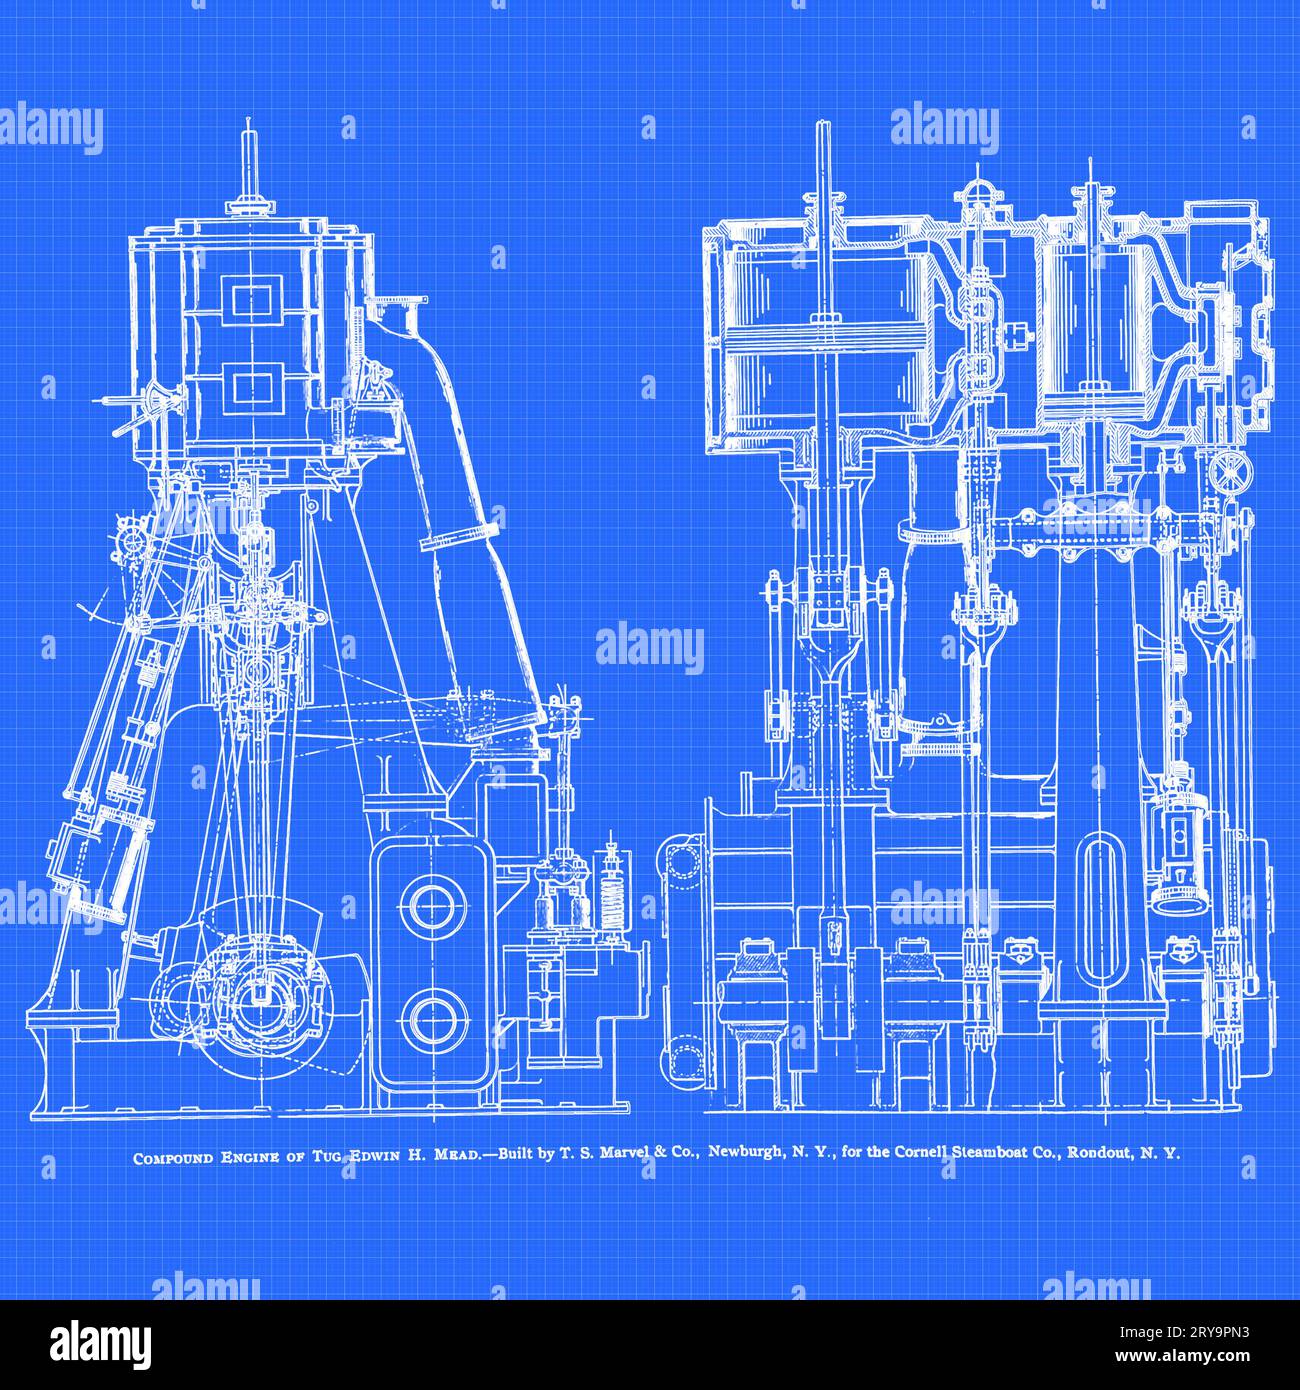 Compound engine blueprint, illustration Stock Photo